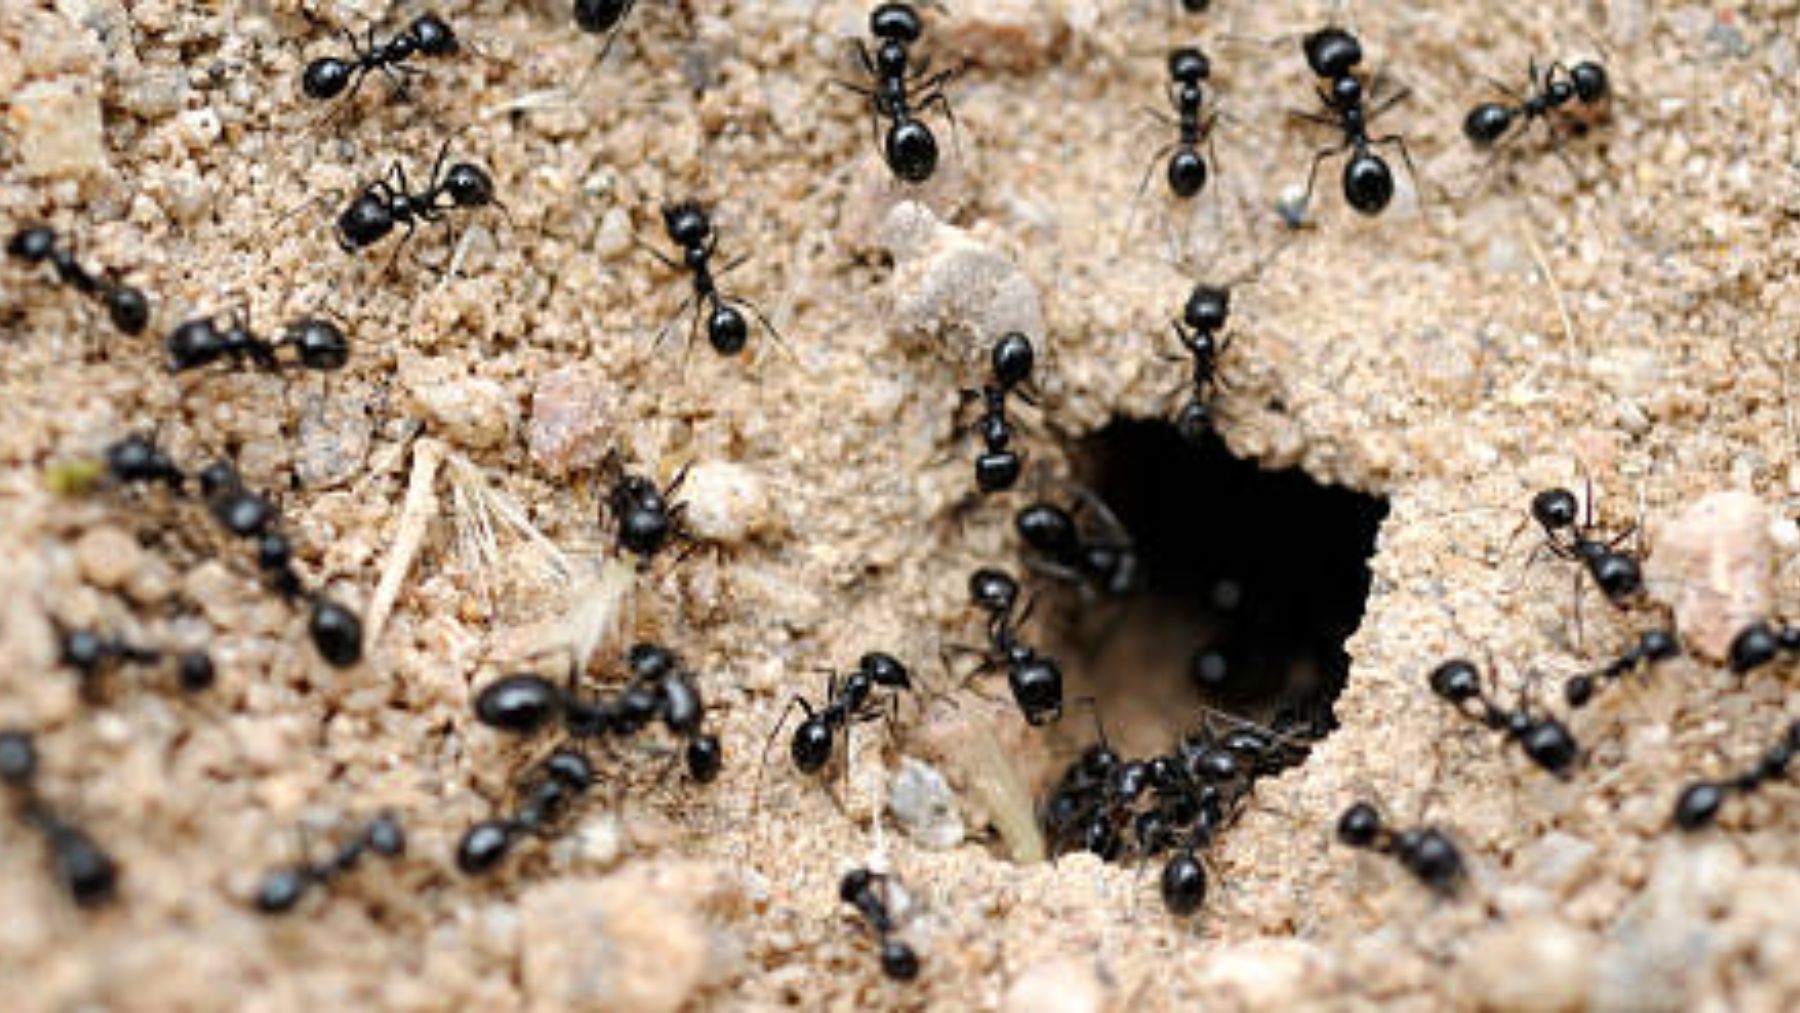 Descubrimos el nombre de hormigas en un hormiguero